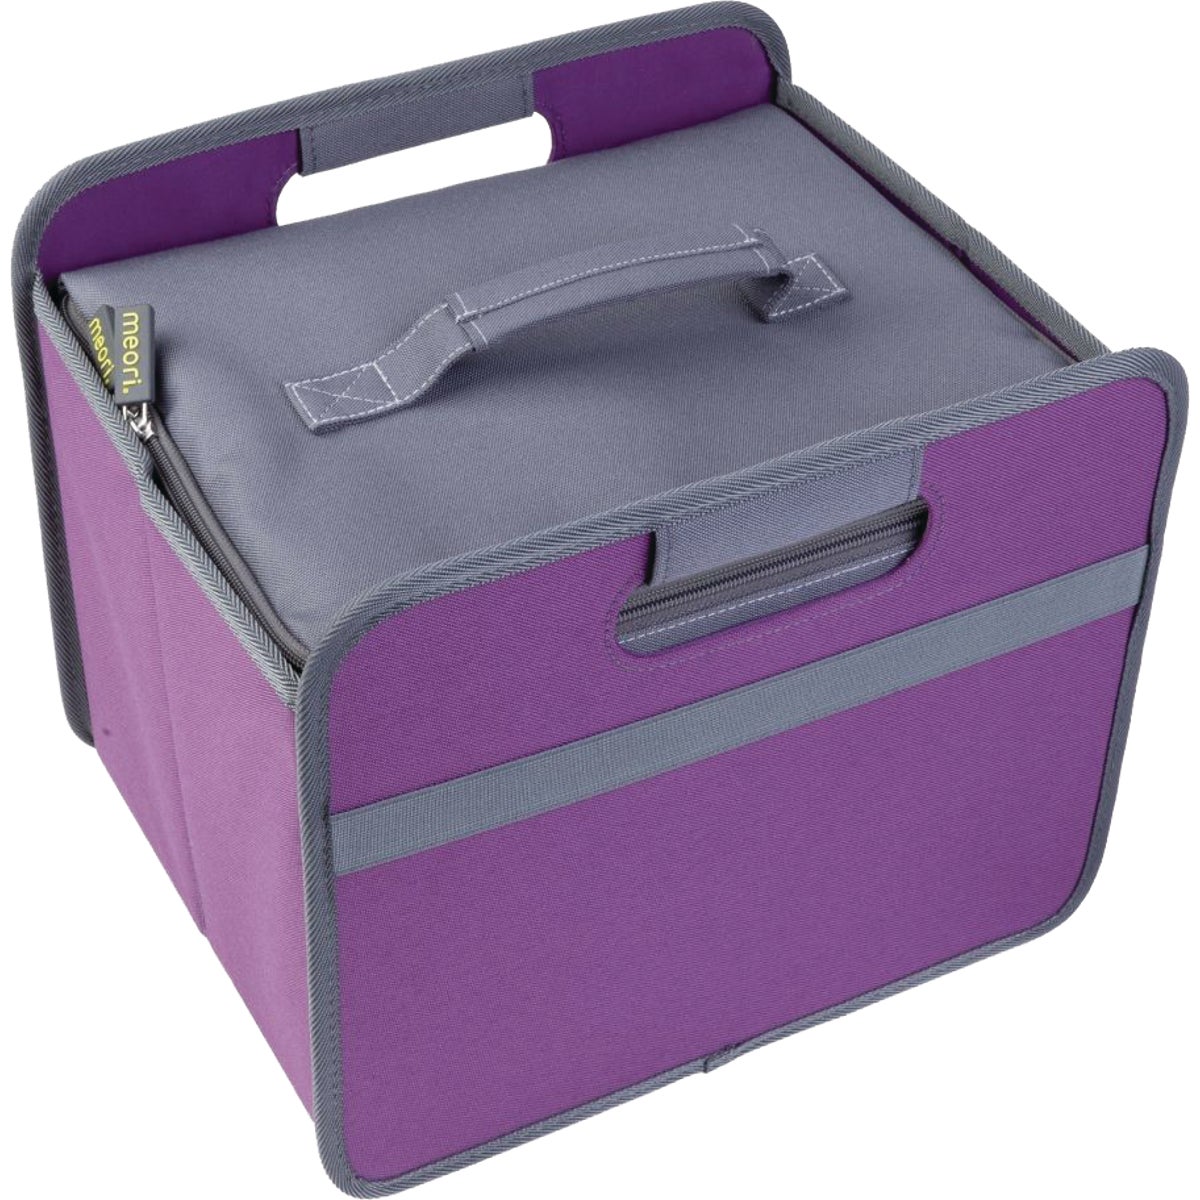 Meori Storage Basket Cooler Insert Bag – Hemlock Hardware